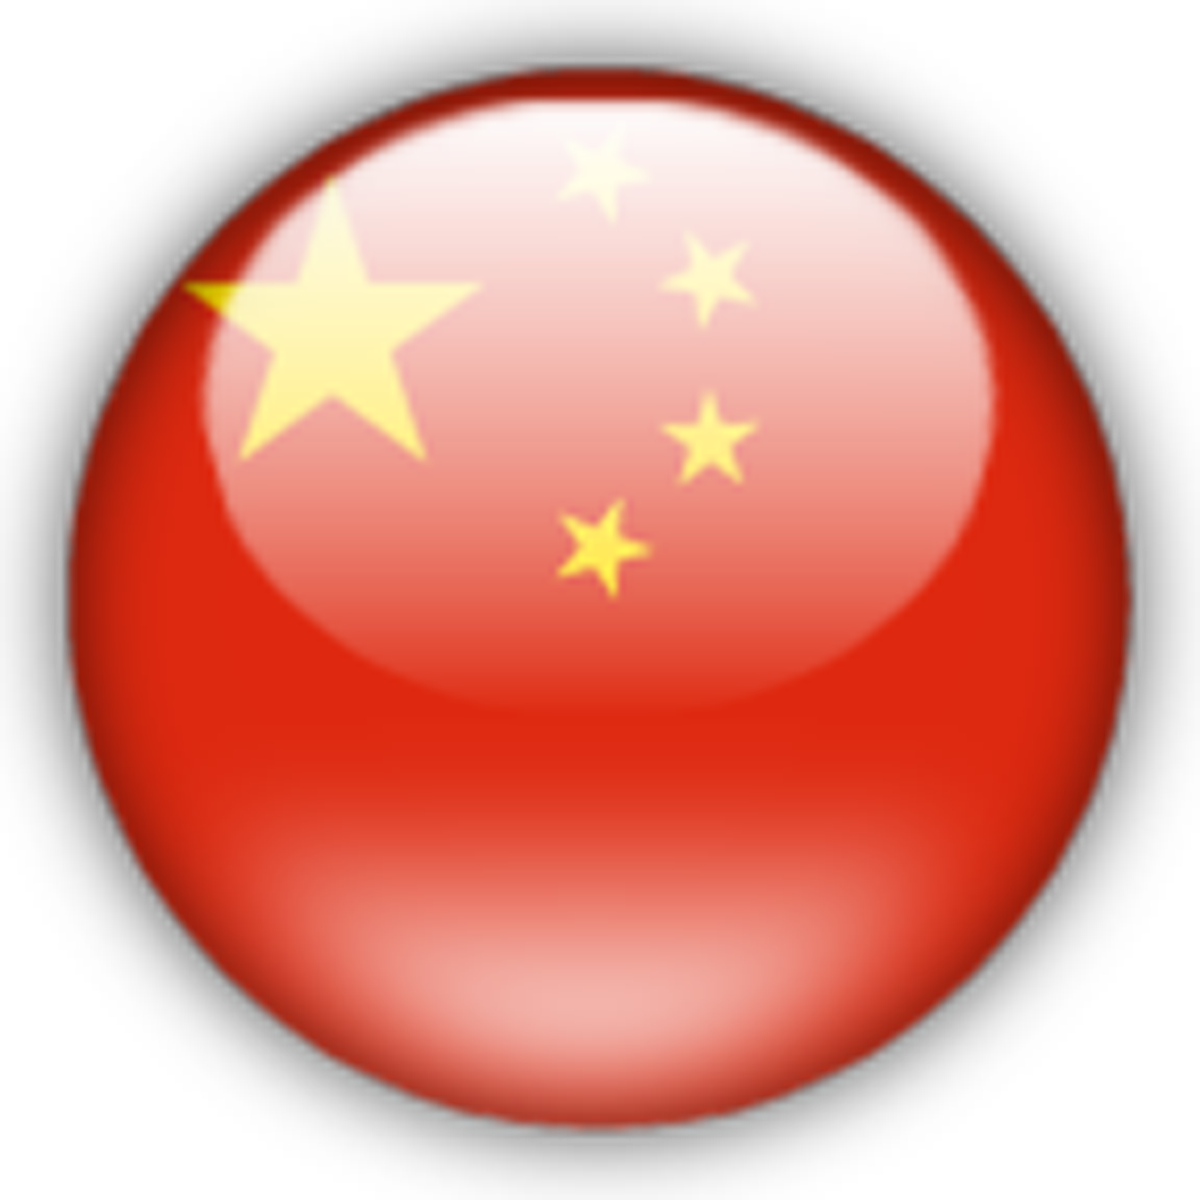 Download China Flag Free Png Image Hq Png Image Freepngimg